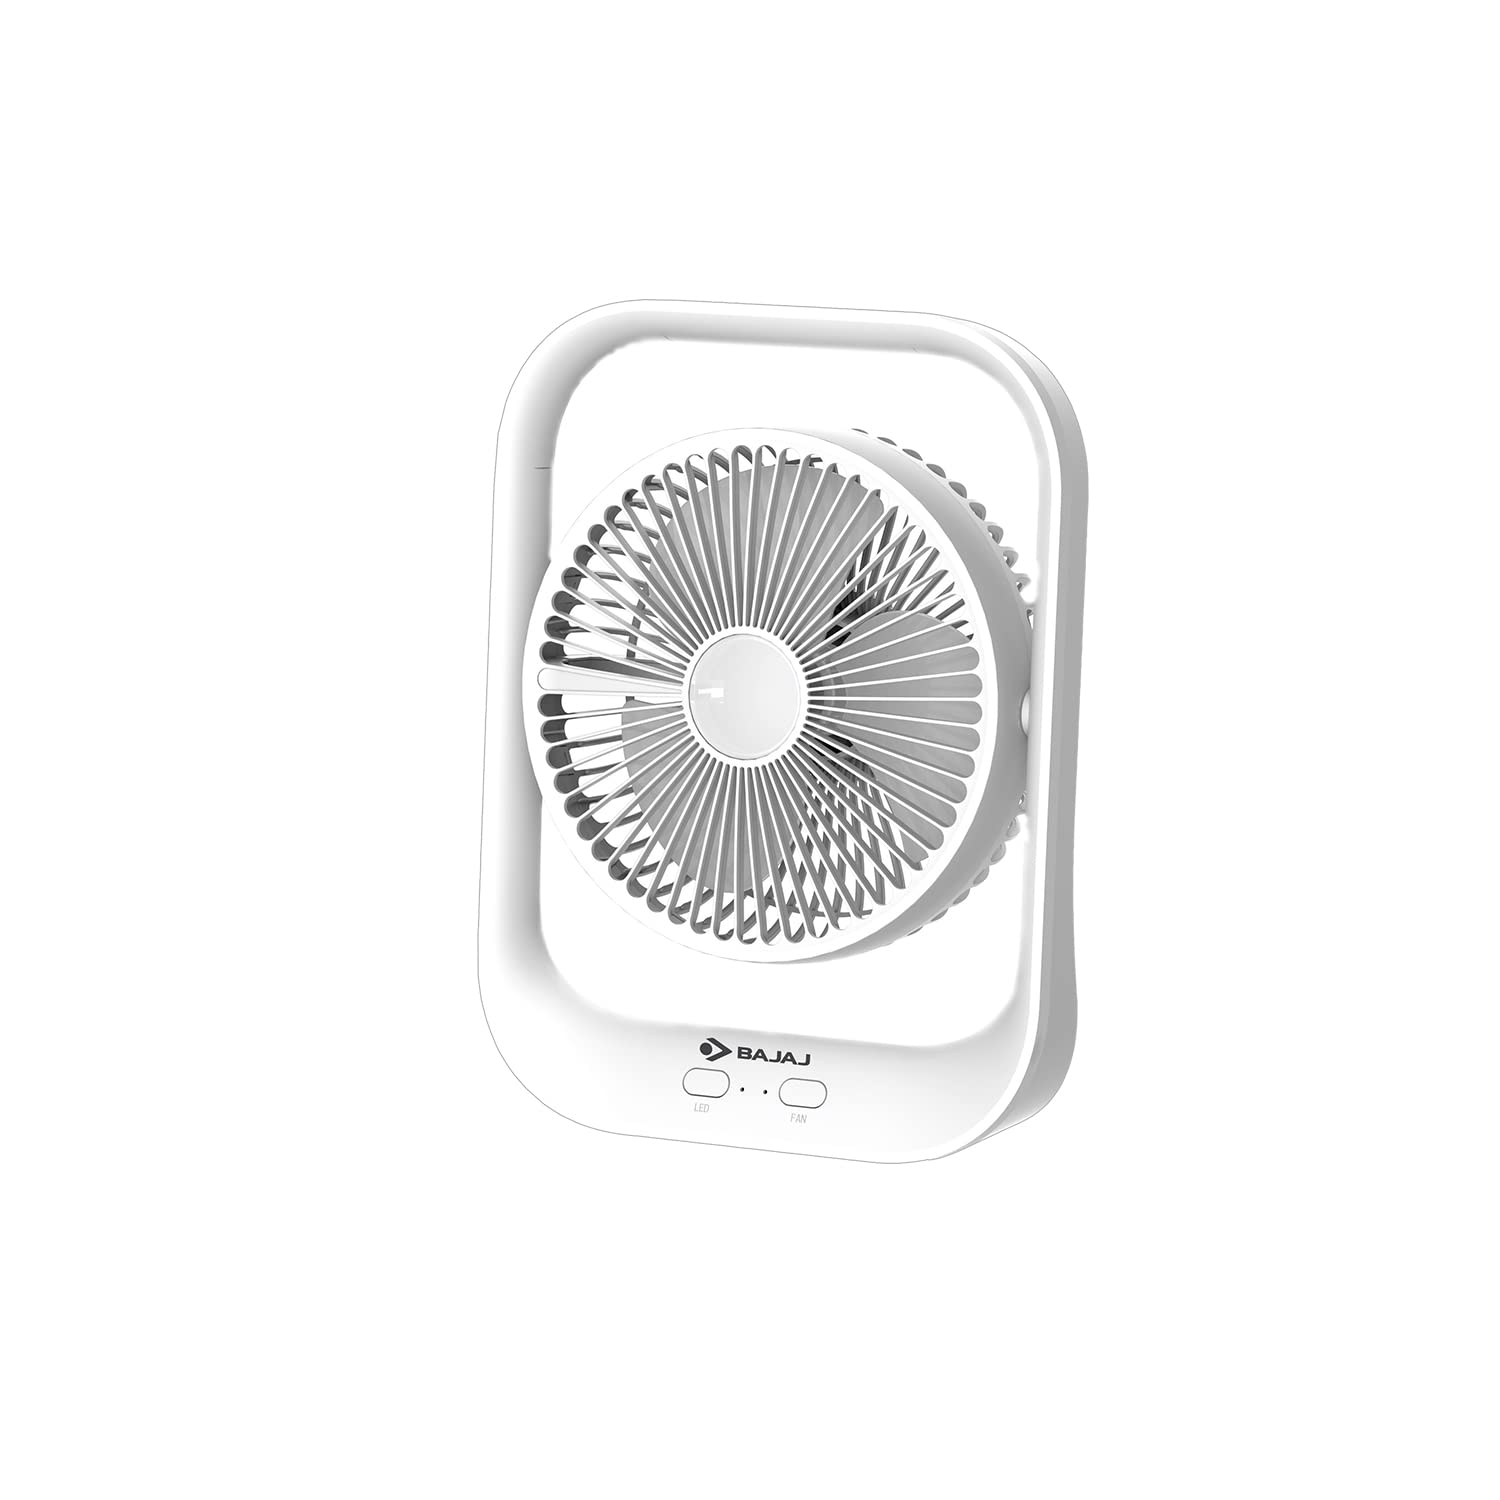 Bajaj Pygmy 178mm | USB Charging Fan | LED Light | 2100 RPM High Speed Table Fan | Silent Operation | Rechargeable Fan | Charging Fans for Home | White Portable Fan